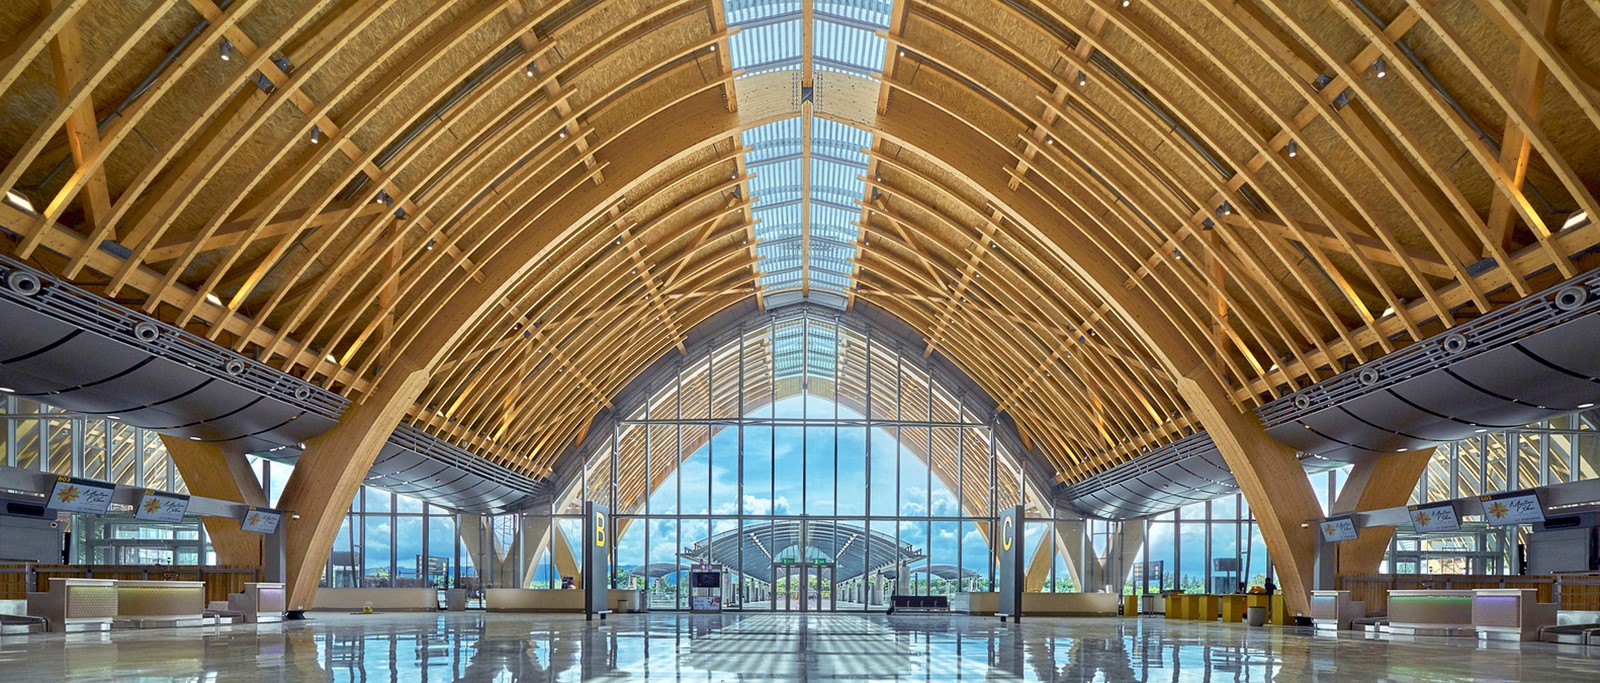 10 Diseños de aeropuertos inspiradores en todo el mundo-Sheet21